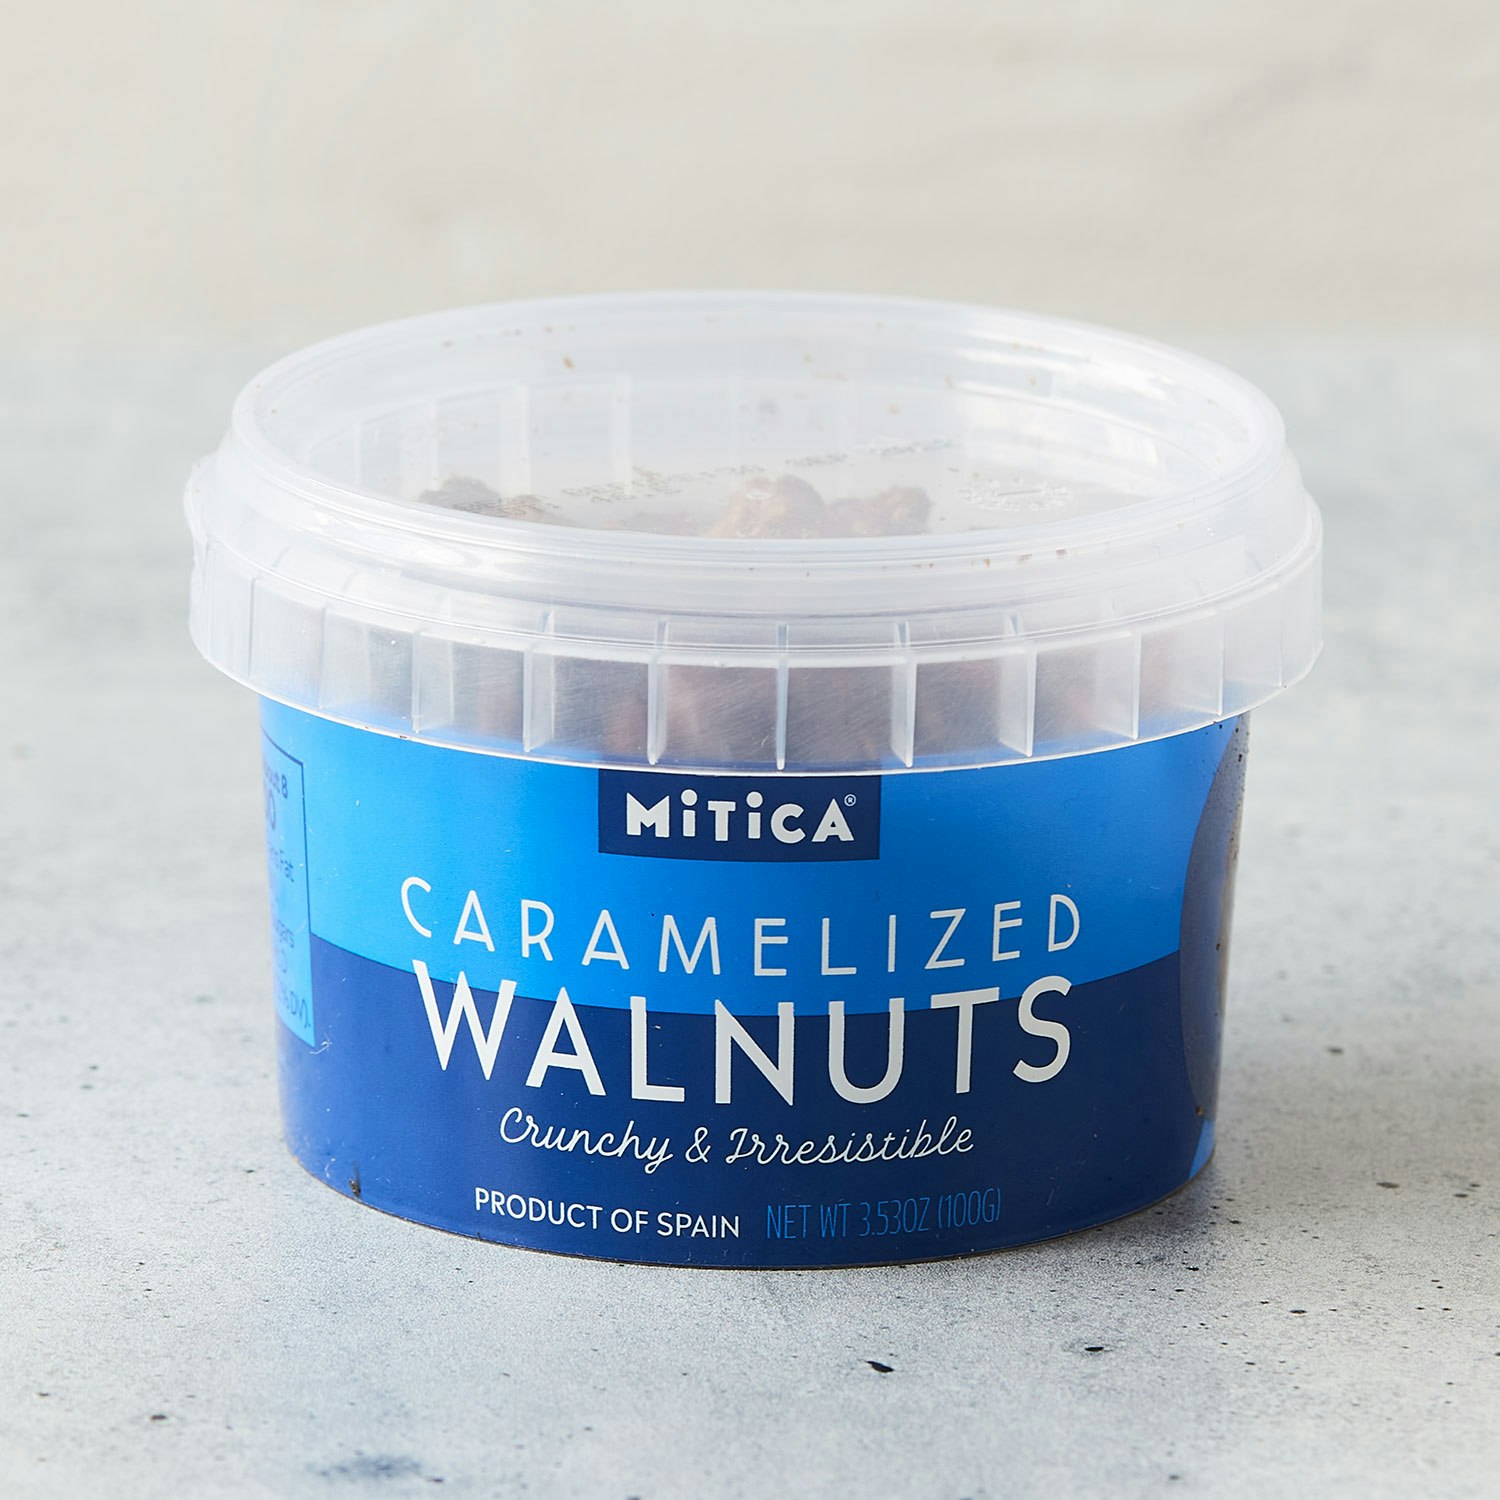 mitica caramelized walnuts minitub specialty foods